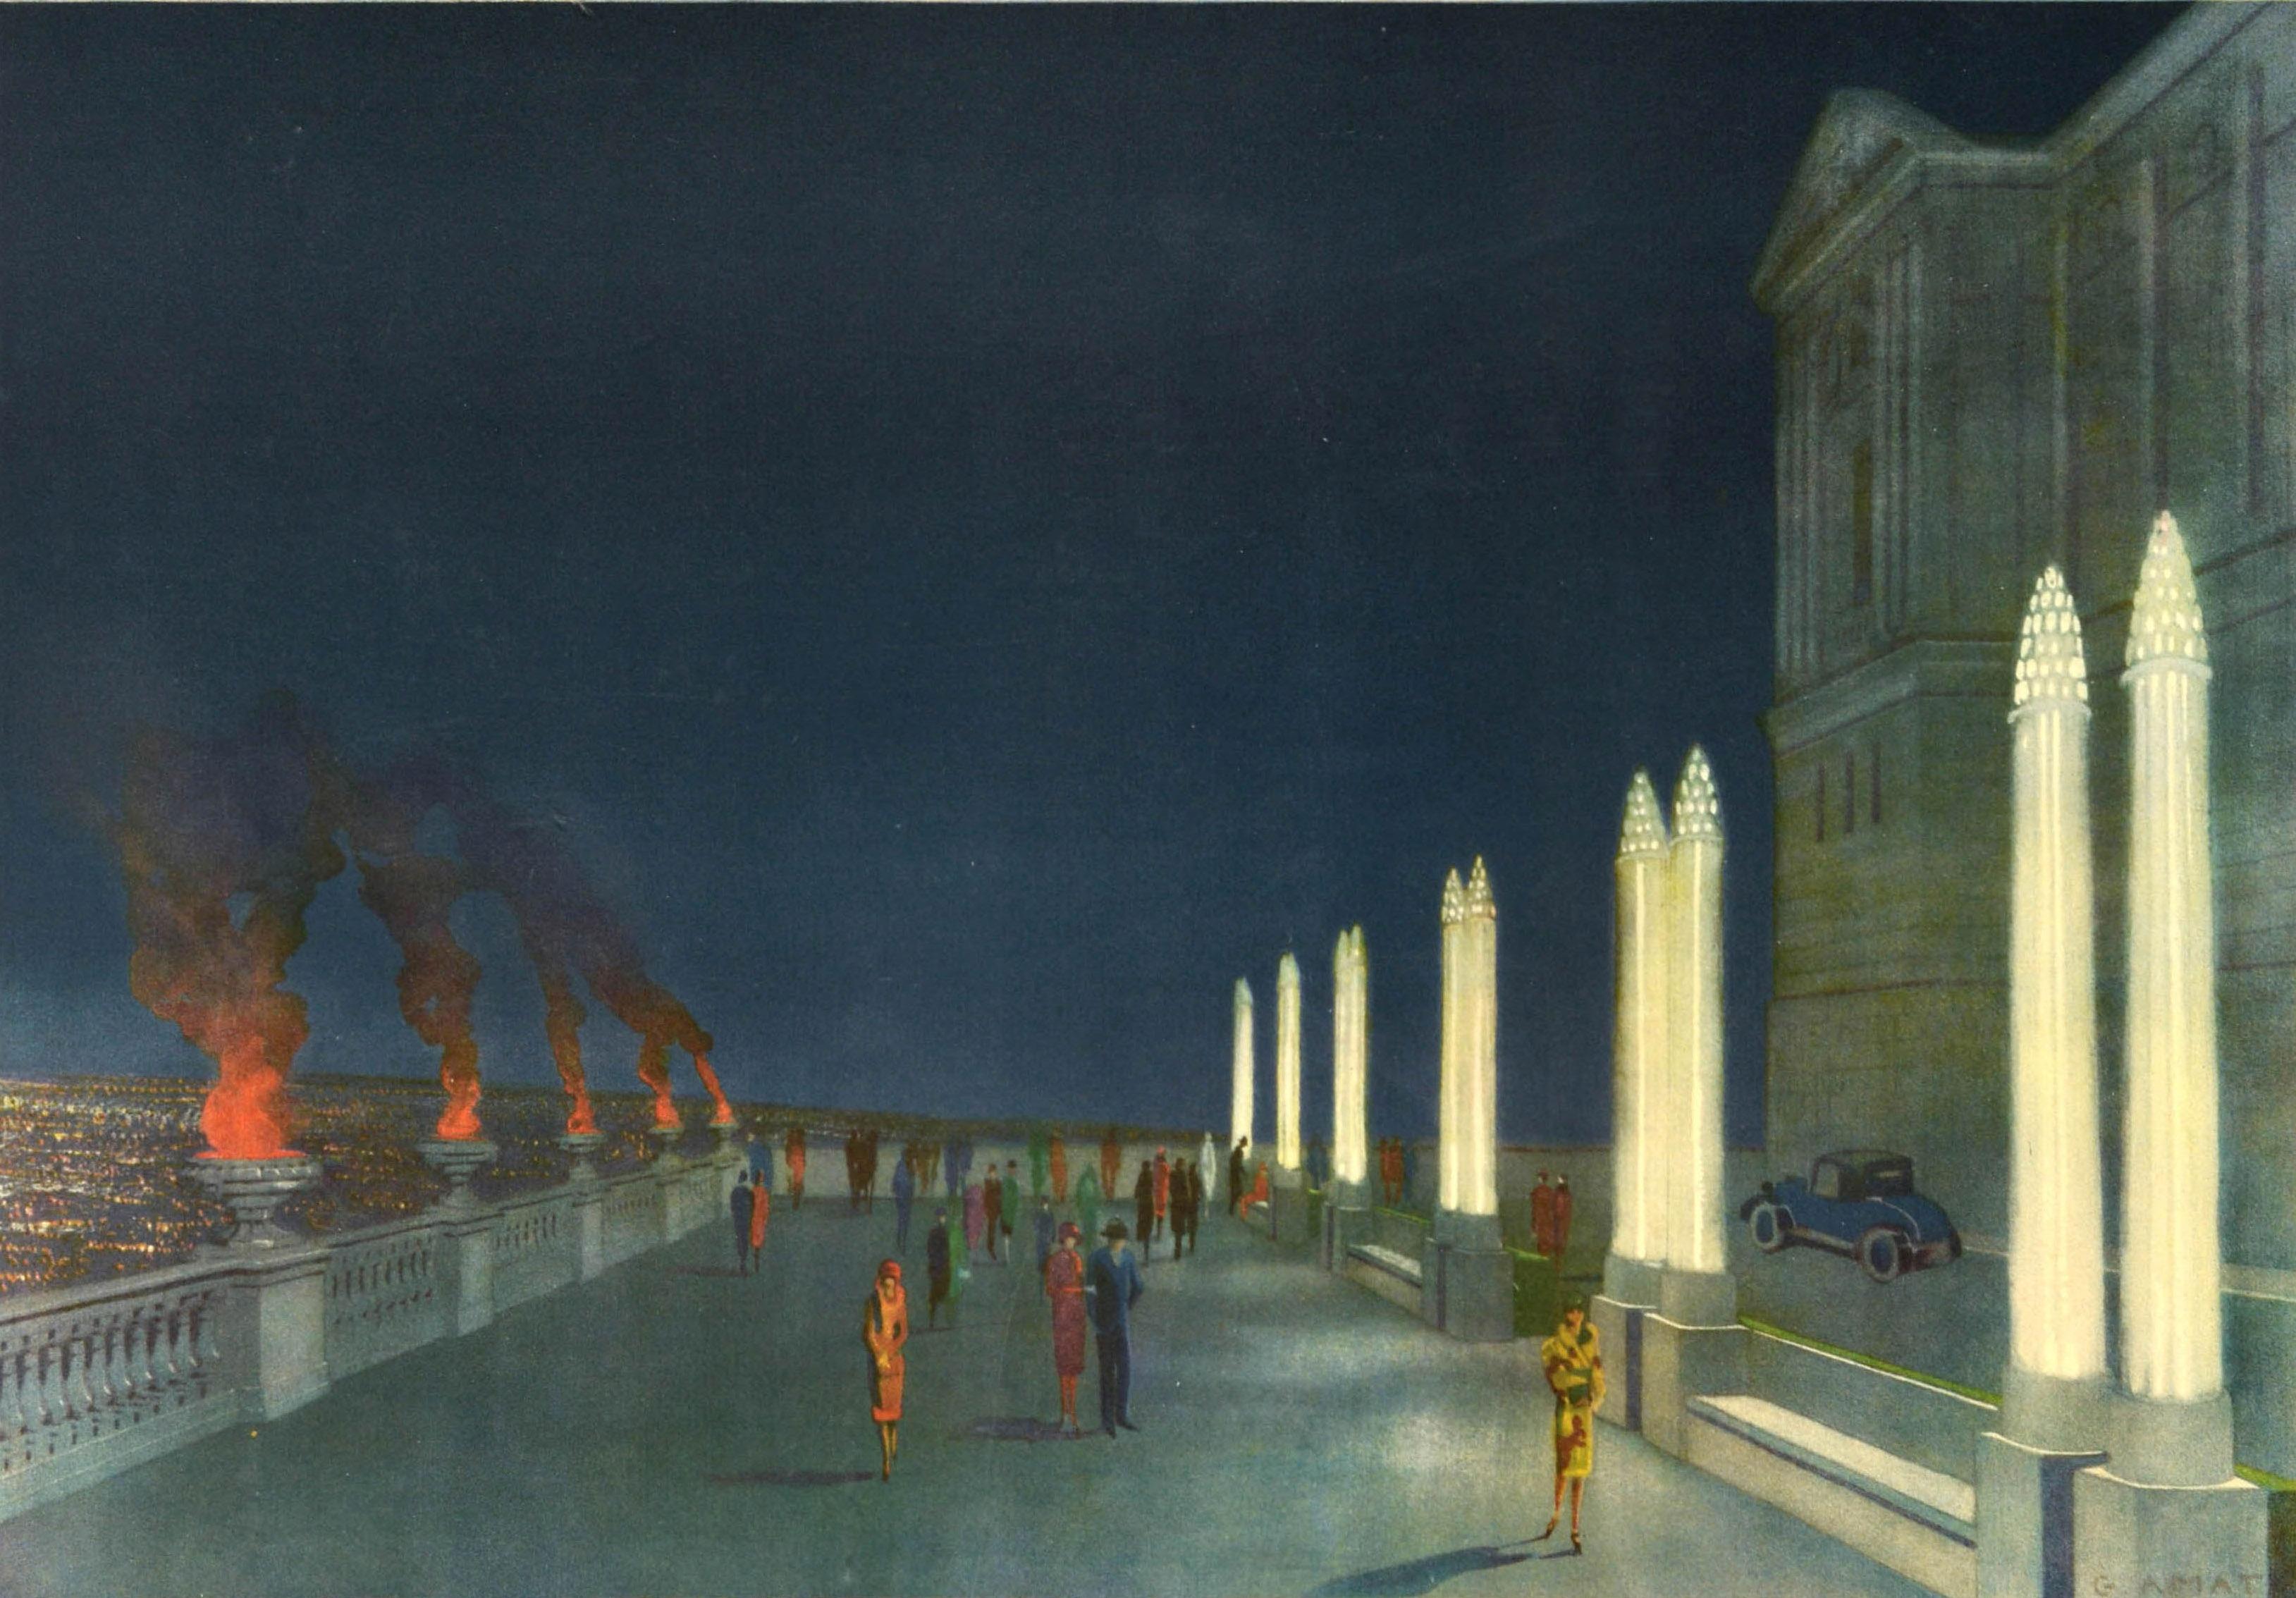 Affiche publicitaire originale de l'Exposition internationale de Barcelone de 1929 - Print de Unknown